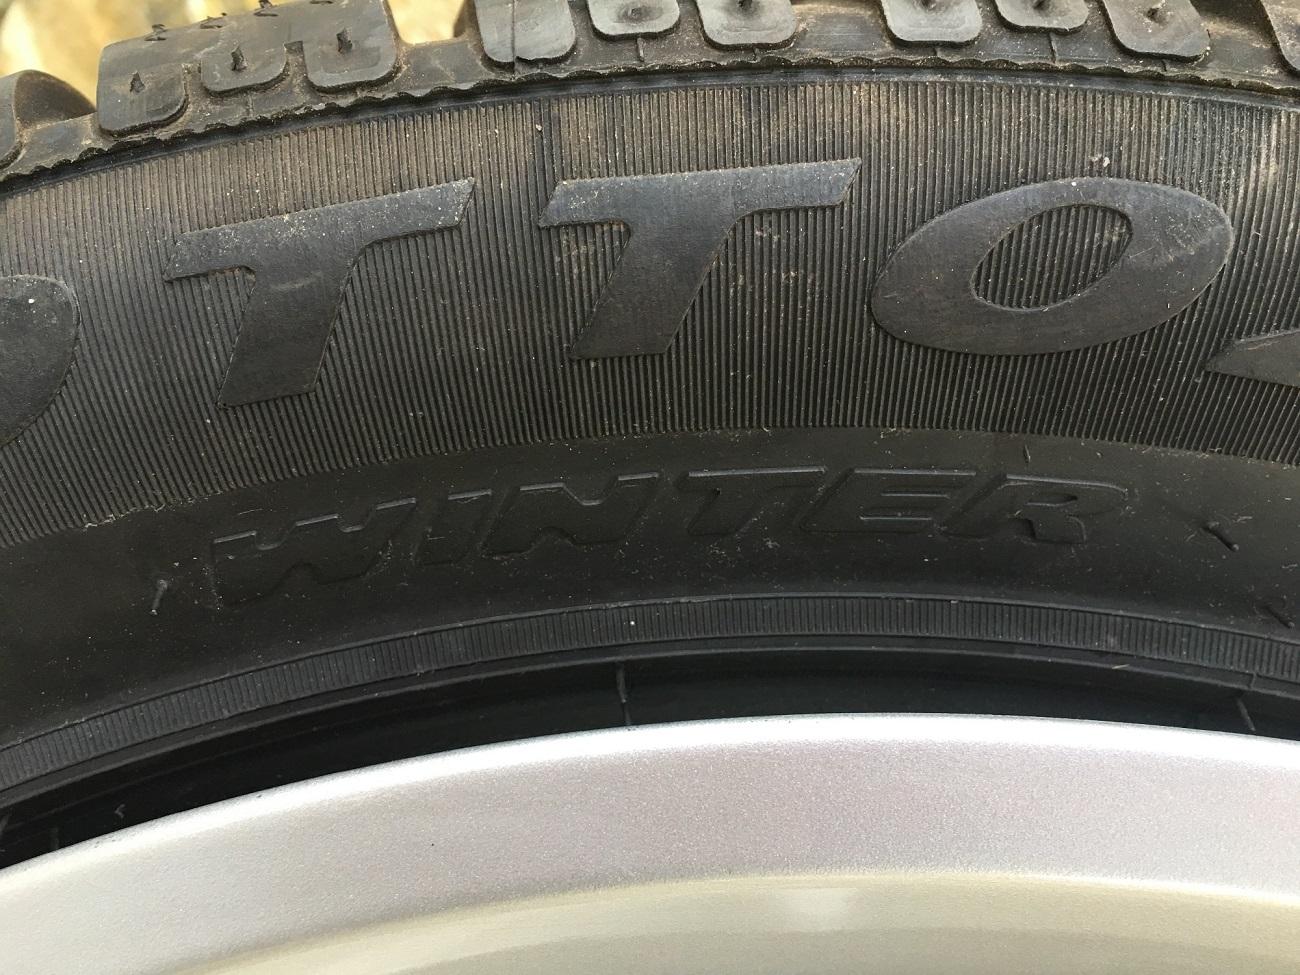 Four x Ferrari California (F149) rims & winter tyres